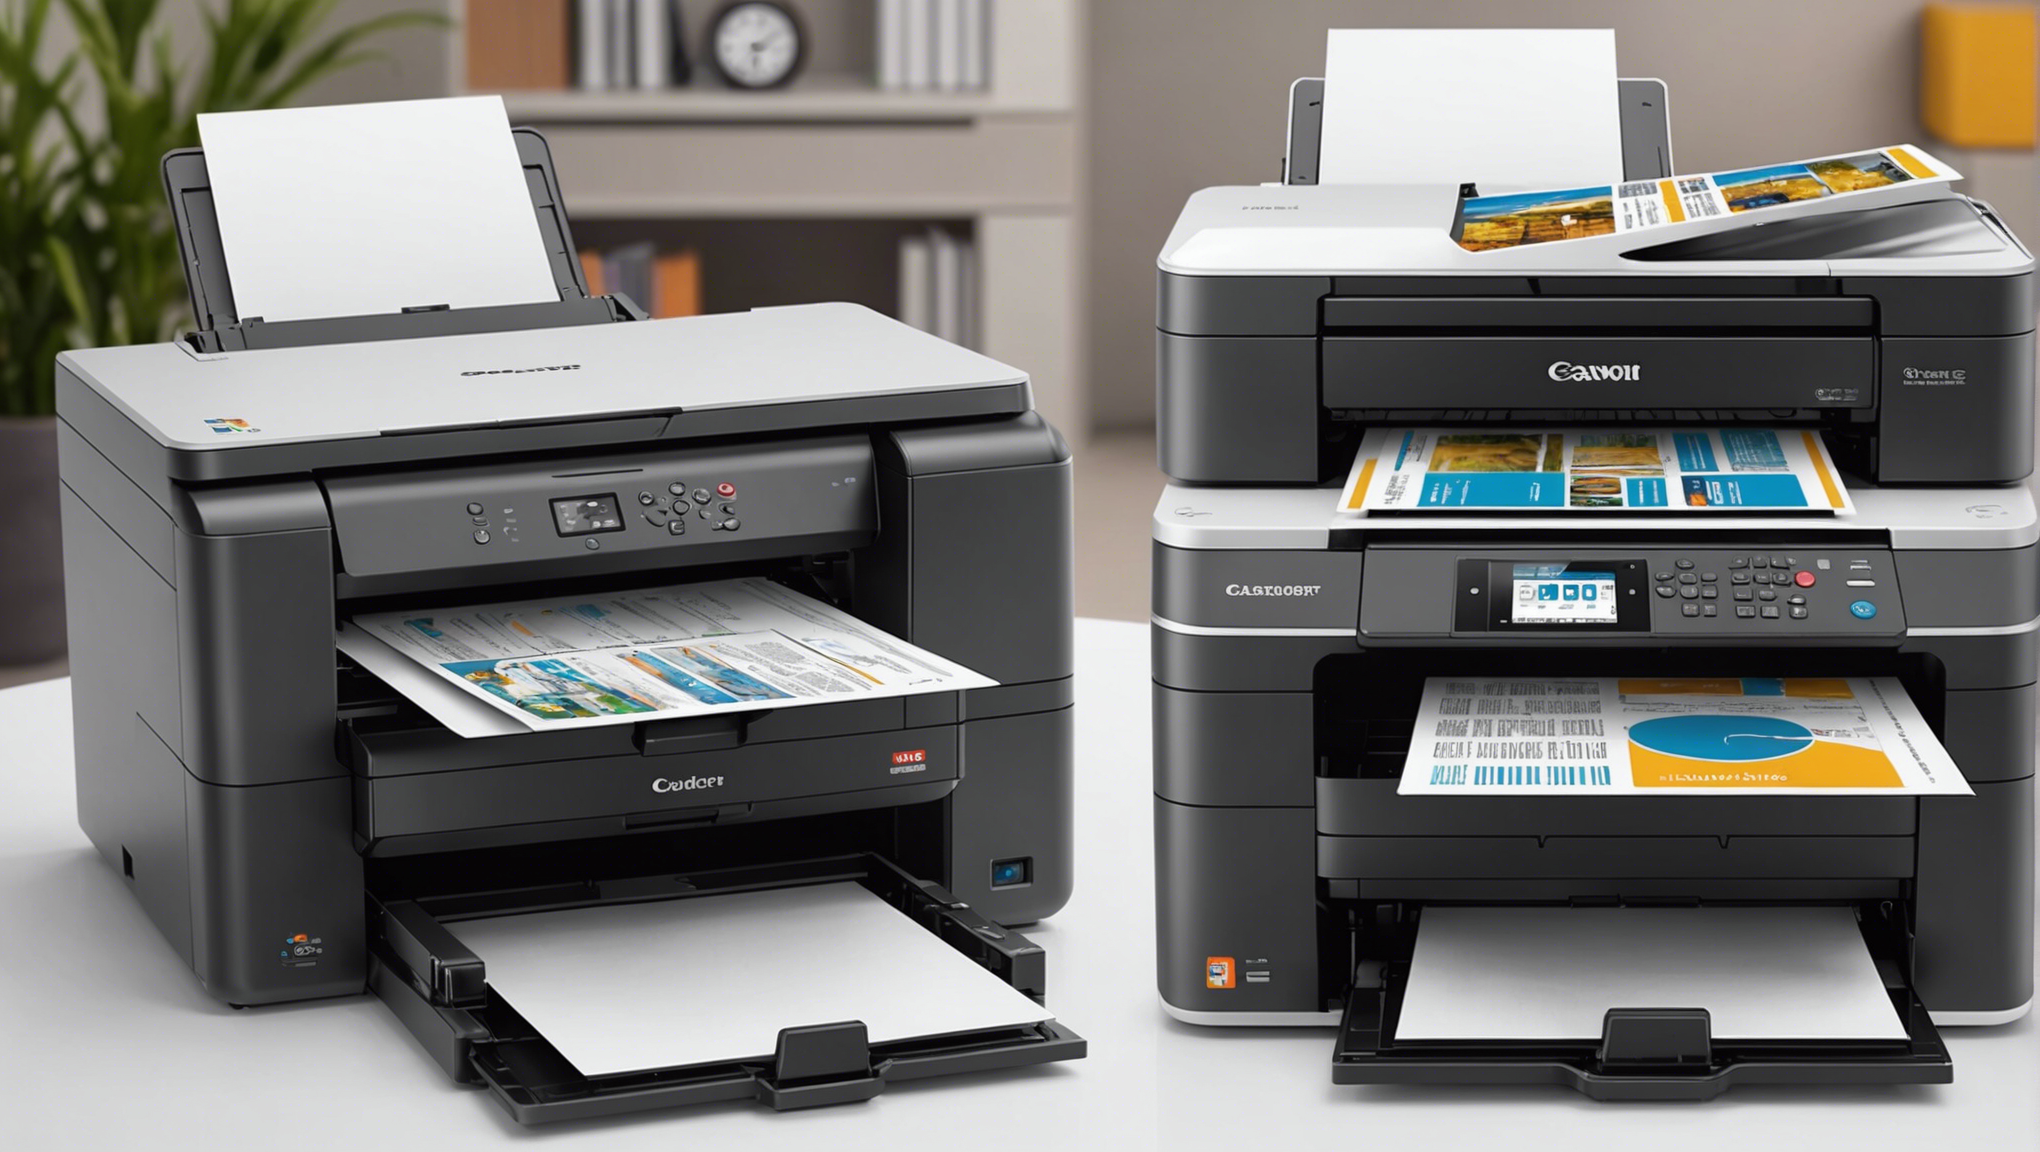 découvrez les meilleures marques d'imprimantes professionnelles à prix abordables pour répondre à vos besoins d'impression professionnelle.